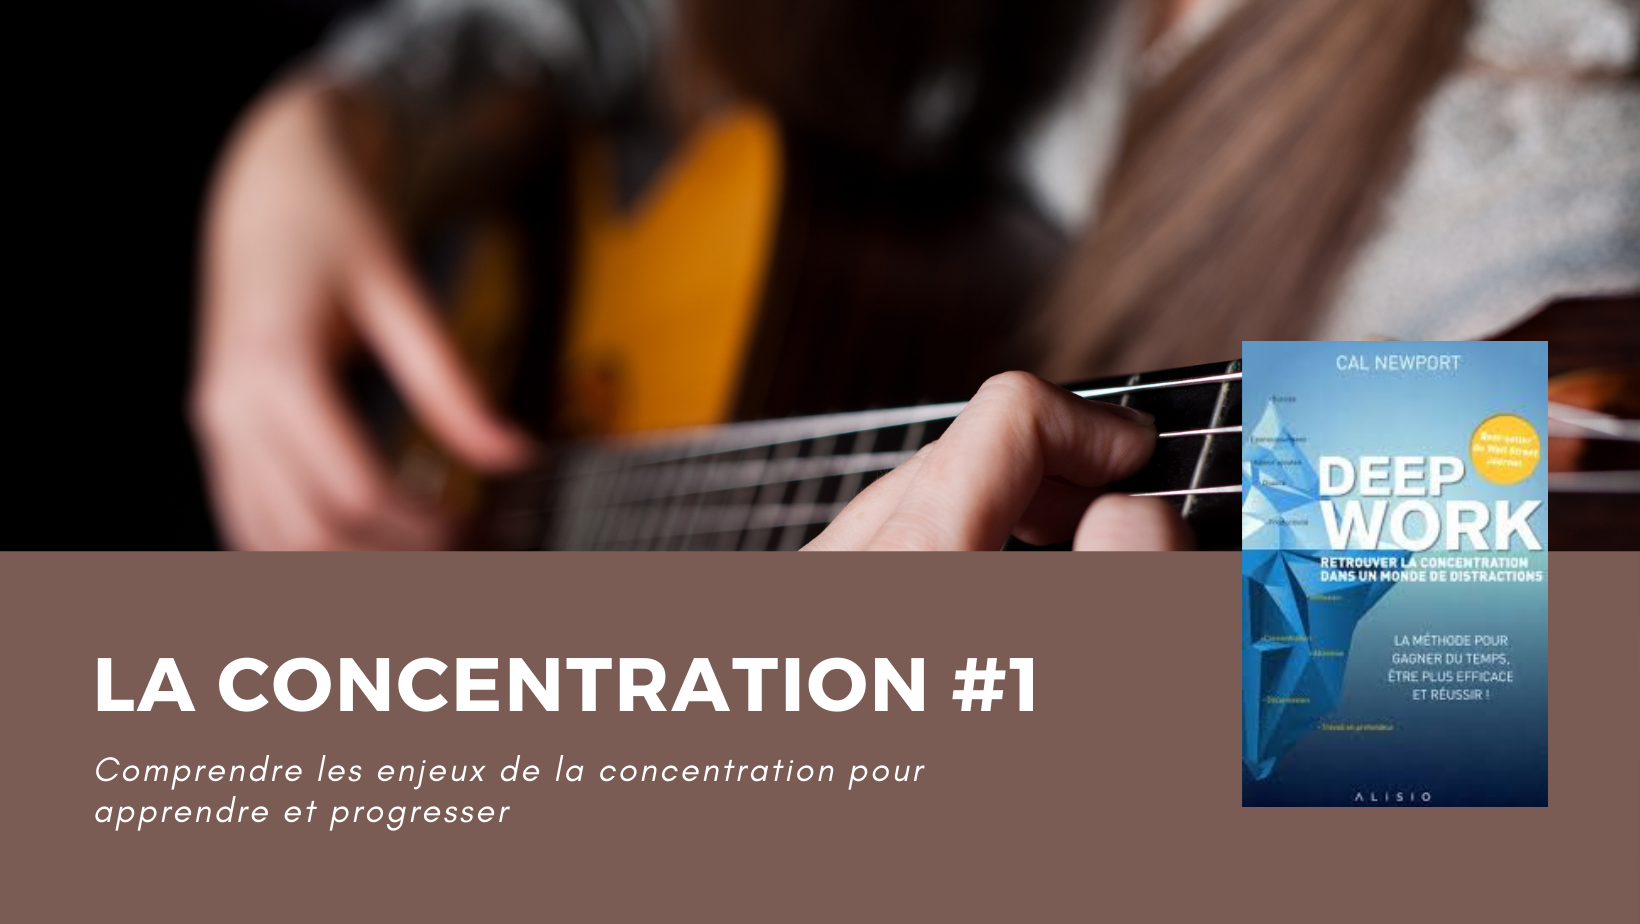 concentration 1 - concentration,objectif,guitare,deep work - La concentration #1, le moyen le plus efficace pour travailler sa guitare - La première partie du livre peut sembler hors de propos concernant la musique, mais elle met en lumière une réalité qui s'applique parfaitement dans le domaine musical. Seuls ceux qui maîtrisent leur concentration se démarquent de la masse par la qualité de leur travail.